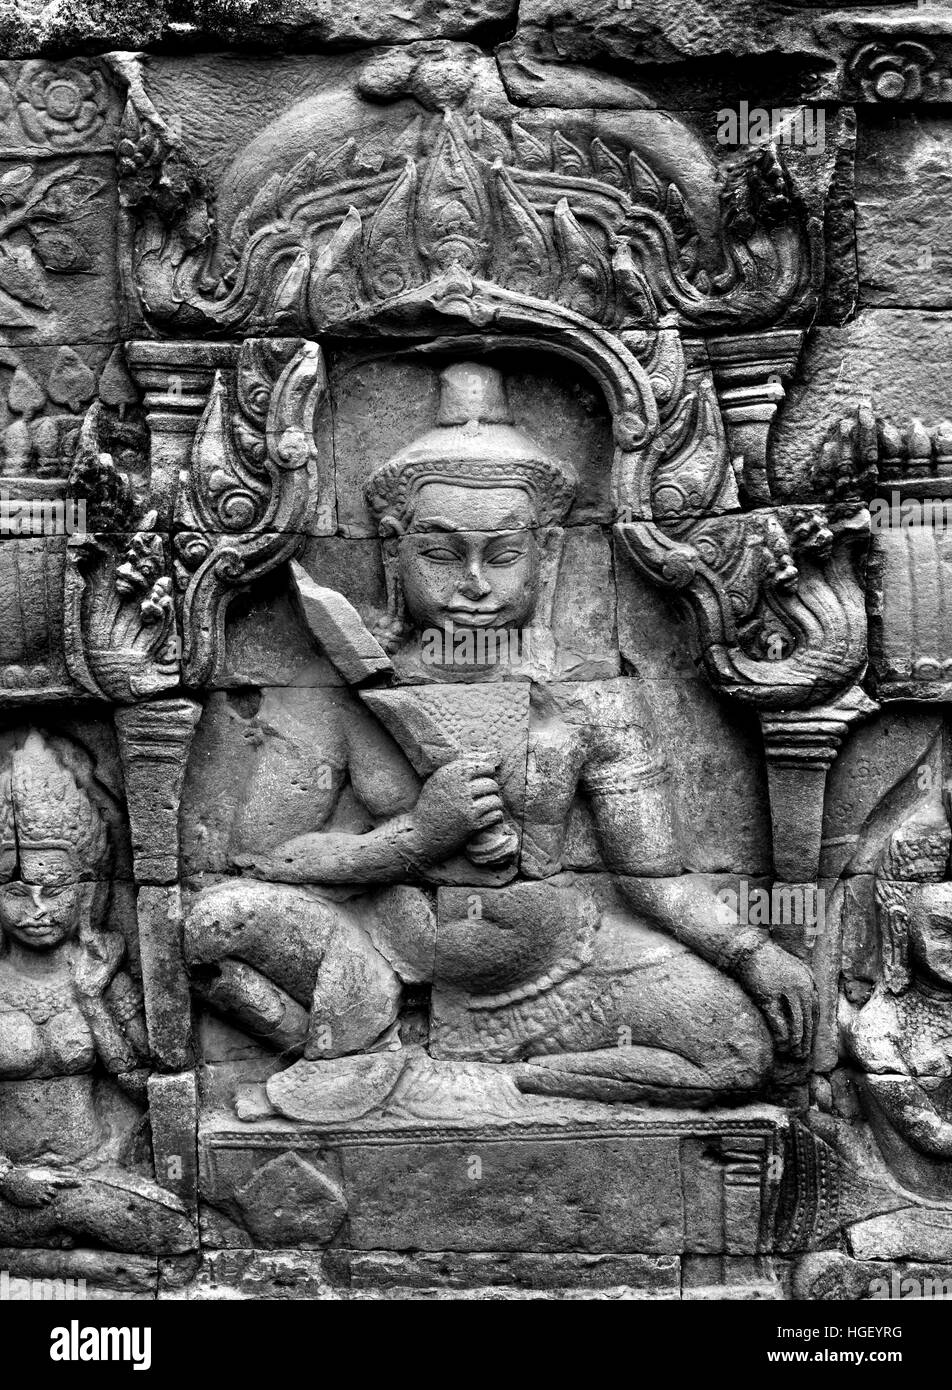 Die Terrasse des Lepra-Königs befindet sich in der nordwestlichen Ecke des Royal Square von Angkor Thom, Kambodscha. Es entstand im Bayon-Stil unter Jayavarman VII, obwohl der moderne Name leitet sich von 15. Jahrhundert Skulptur auf dem Gelände entdeckt. Die Statue zeigt den Hindu-Gott Yama, dem Gott des Todes (Angkor Komplex verschiedene archäologische Hauptstädte Khmer Reich 9-15. Jahrhundert Angkor Kambodscha) Stockfoto